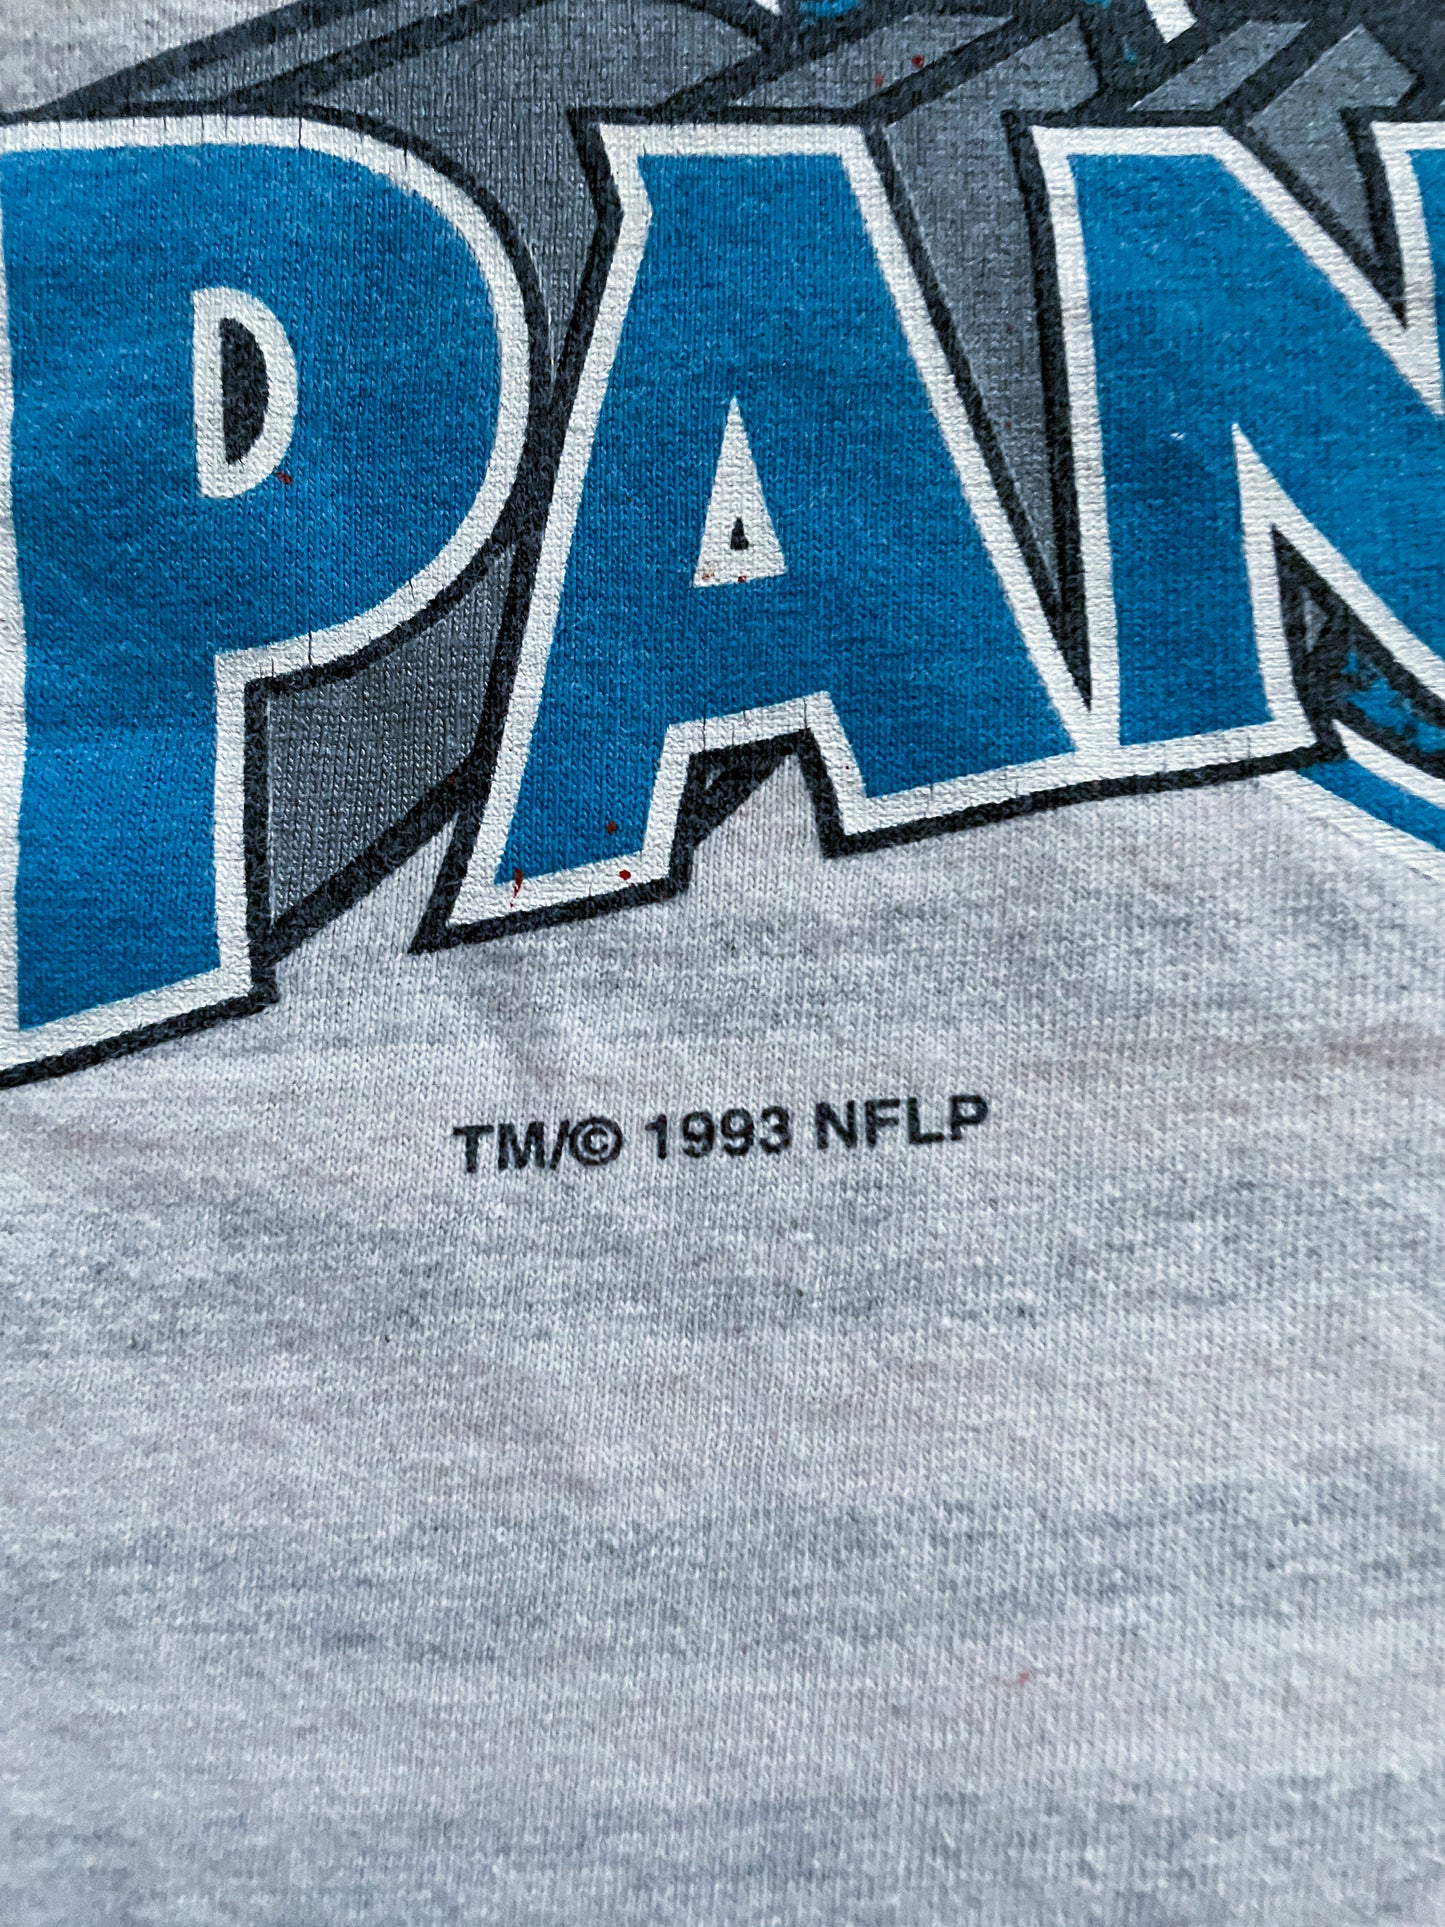 Vintage Carolina Panthers t-shirt